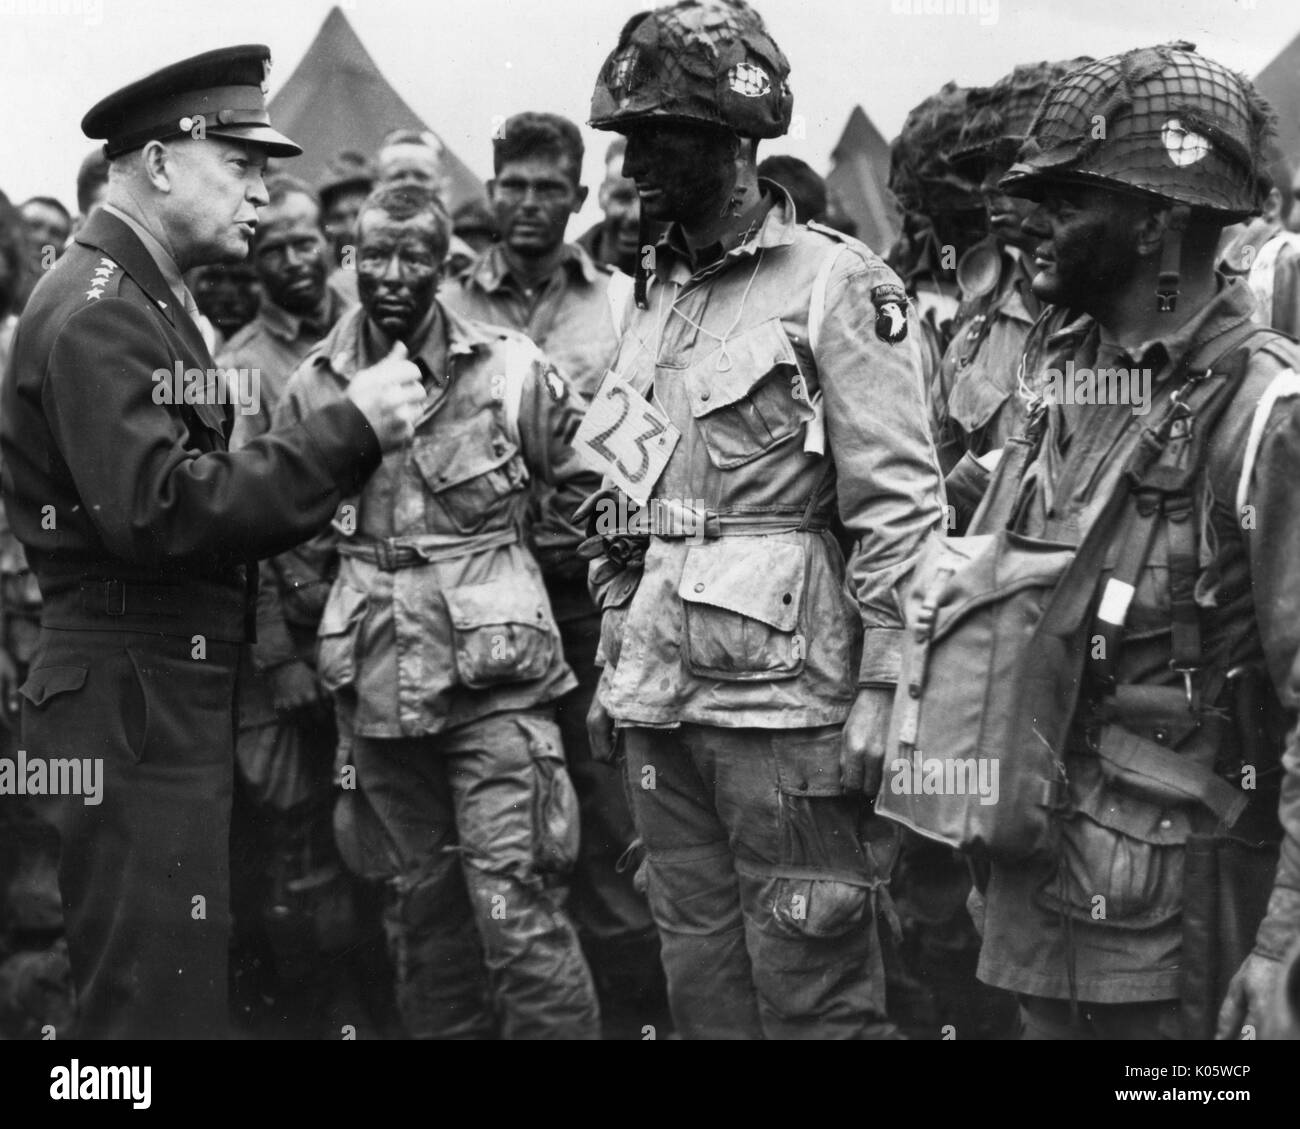 Portrait du général Dwight D. Eisenhower commandant ses soldats à l'extérieur d'un camp, Eisenhower dans un noir uniforme militaire, et les soldats en vêtements militaires échevelée avec la peinture pour le visage et des casques, des expressions faciales, 1945. Banque D'Images